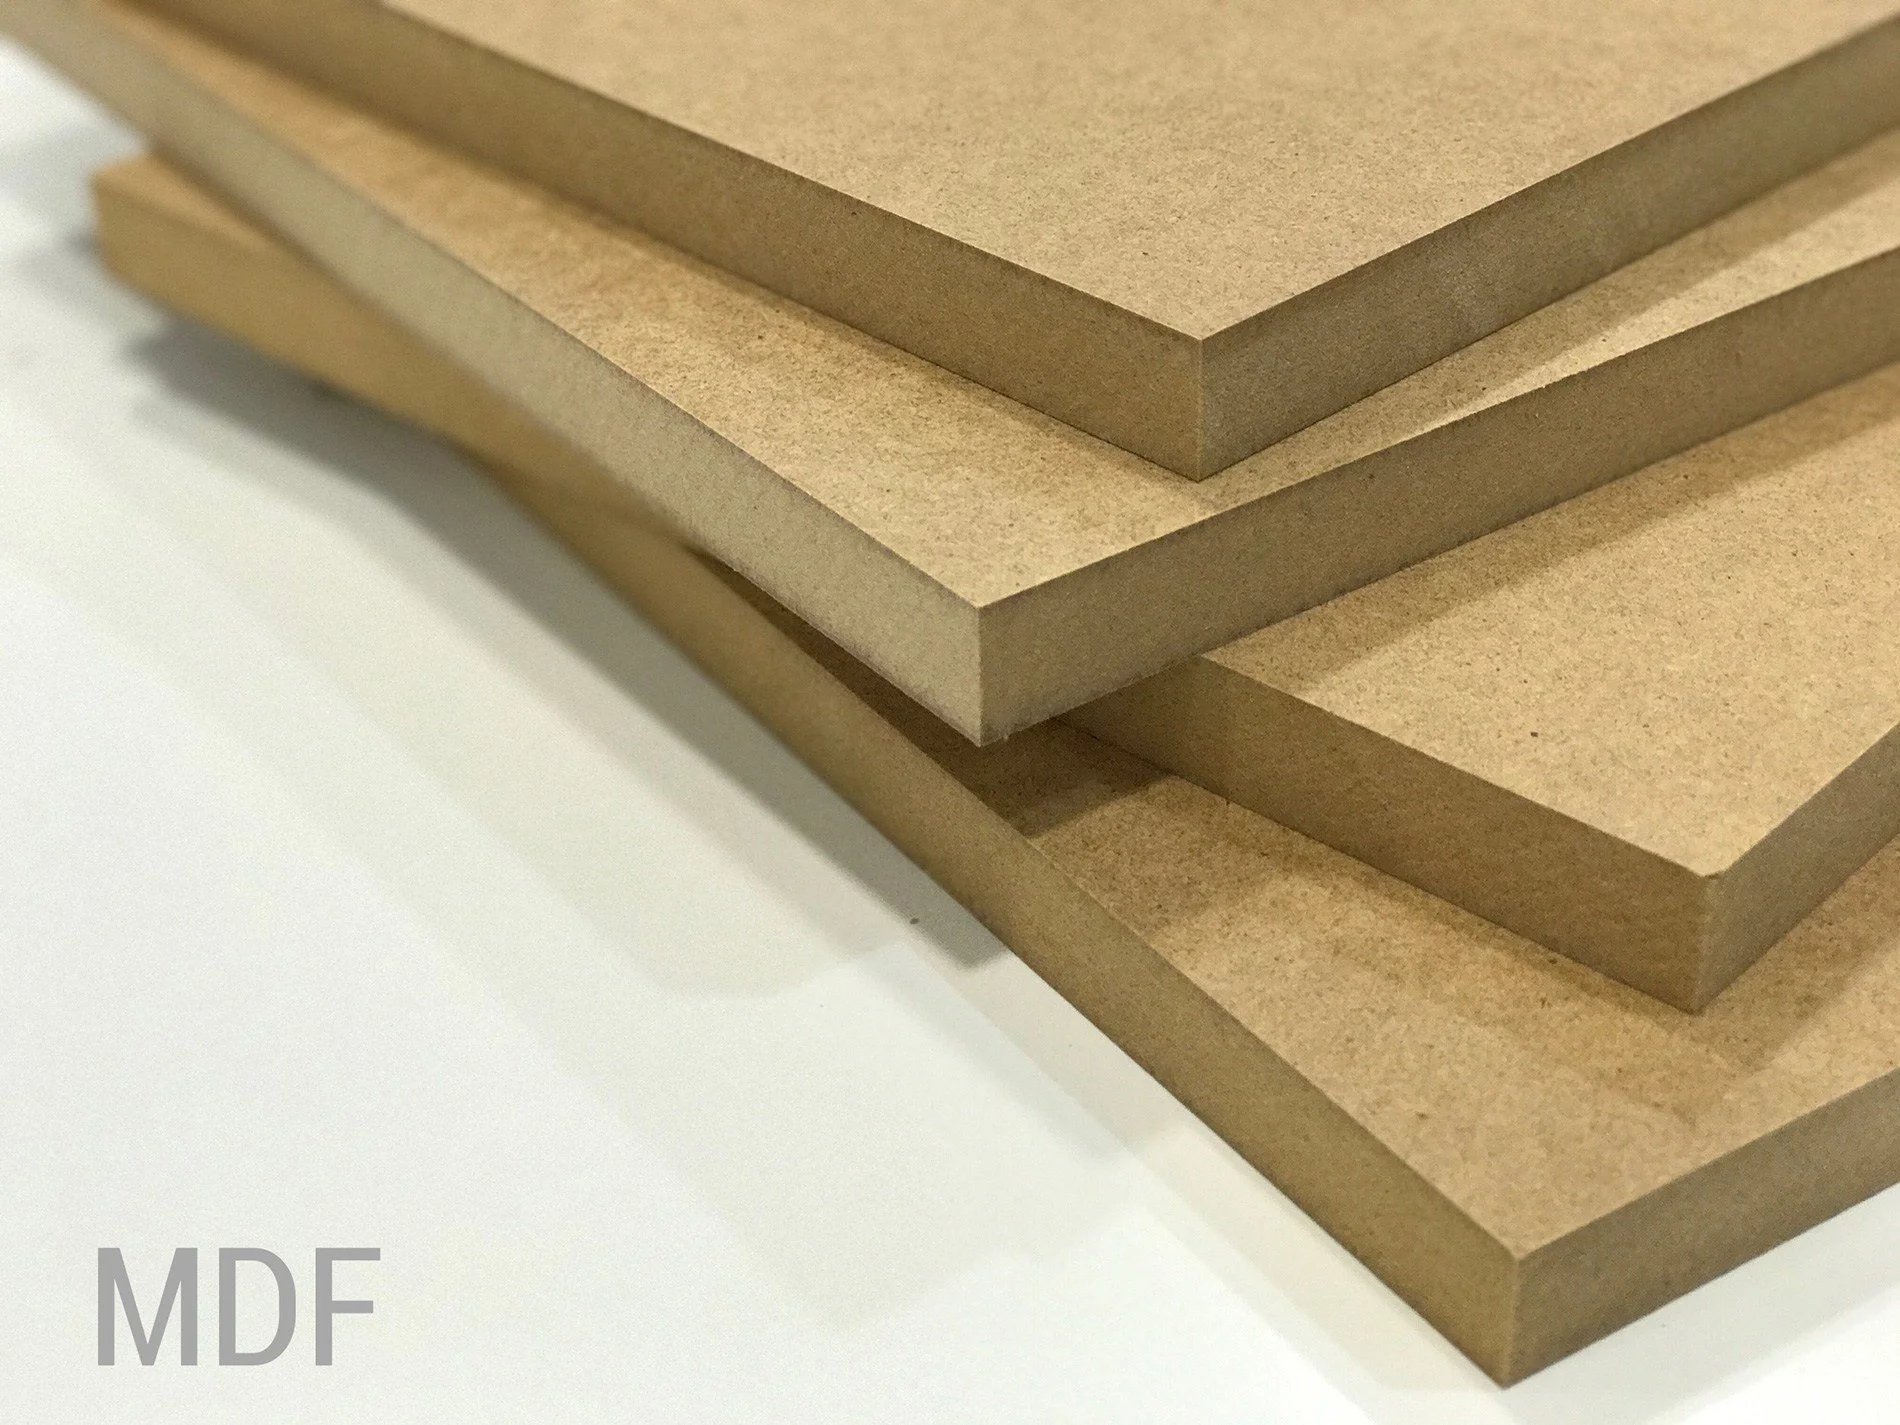 Medium-density fiberboard (MDF):